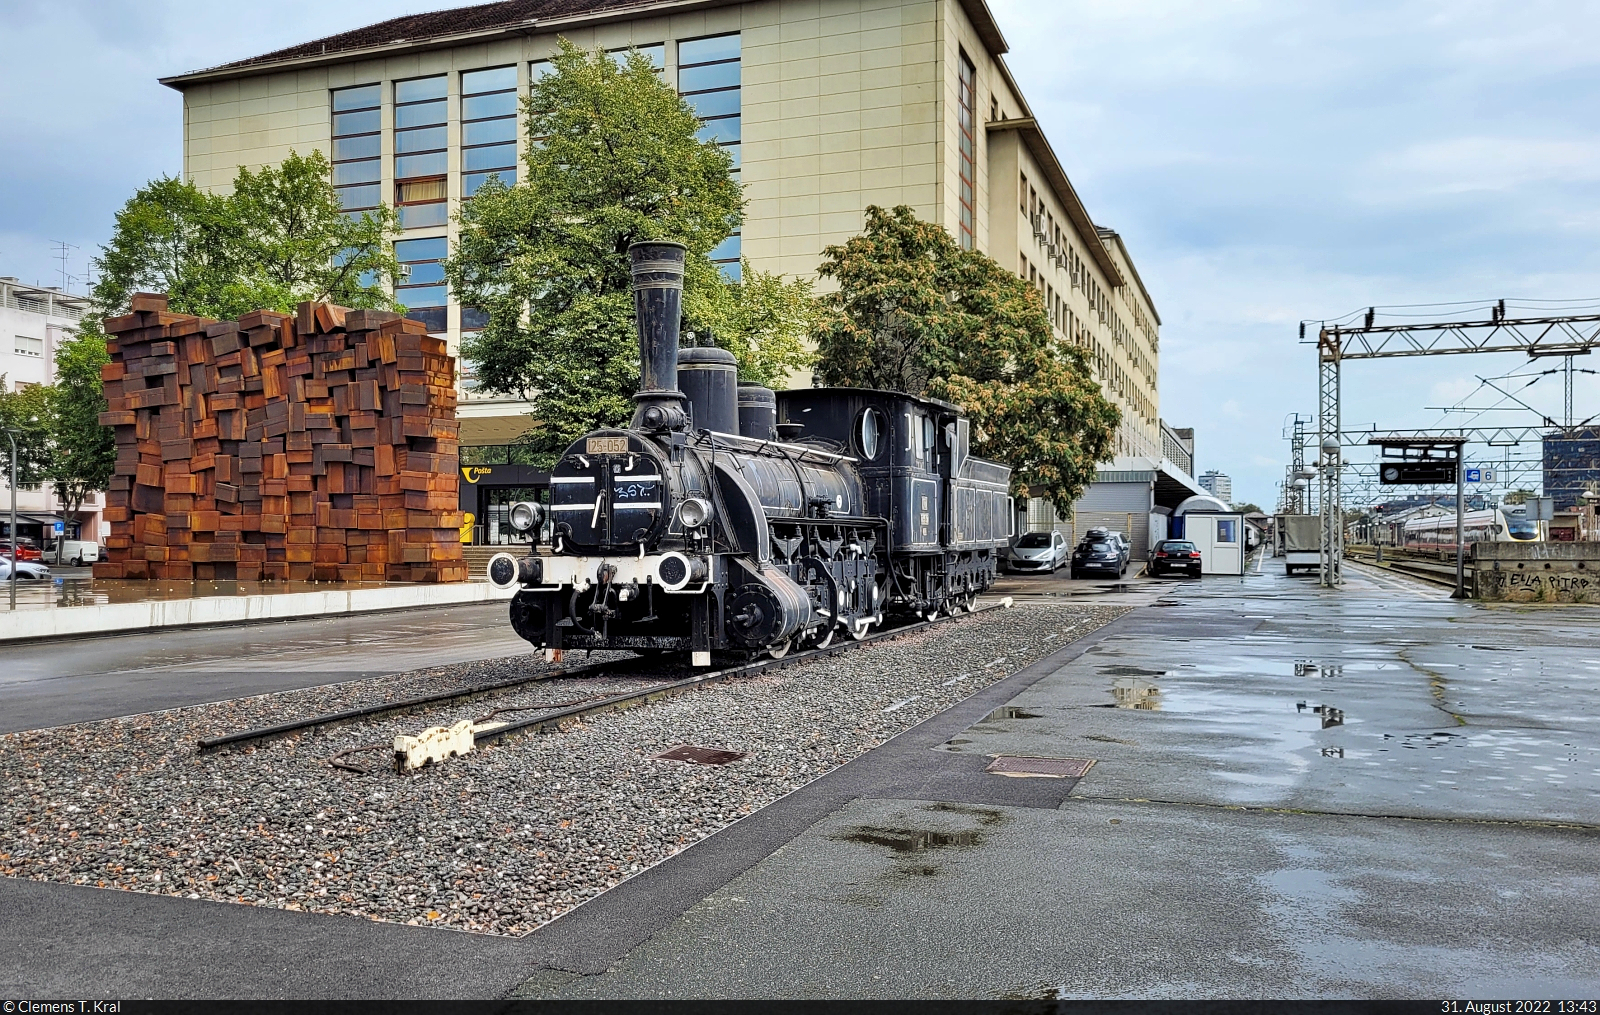 Am Rande von Zagreb Glavni Kol. (HR) ist die Dampflok 125-052 mit dem Beinamen  Katica  ausgestellt. Sie wurde 1891 in Dienst gestellt und gehörte den ehemaligen Jugoslawischen Eisenbahnen (JŽ).

🕓 31.8.2022 | 13:43 Uhr